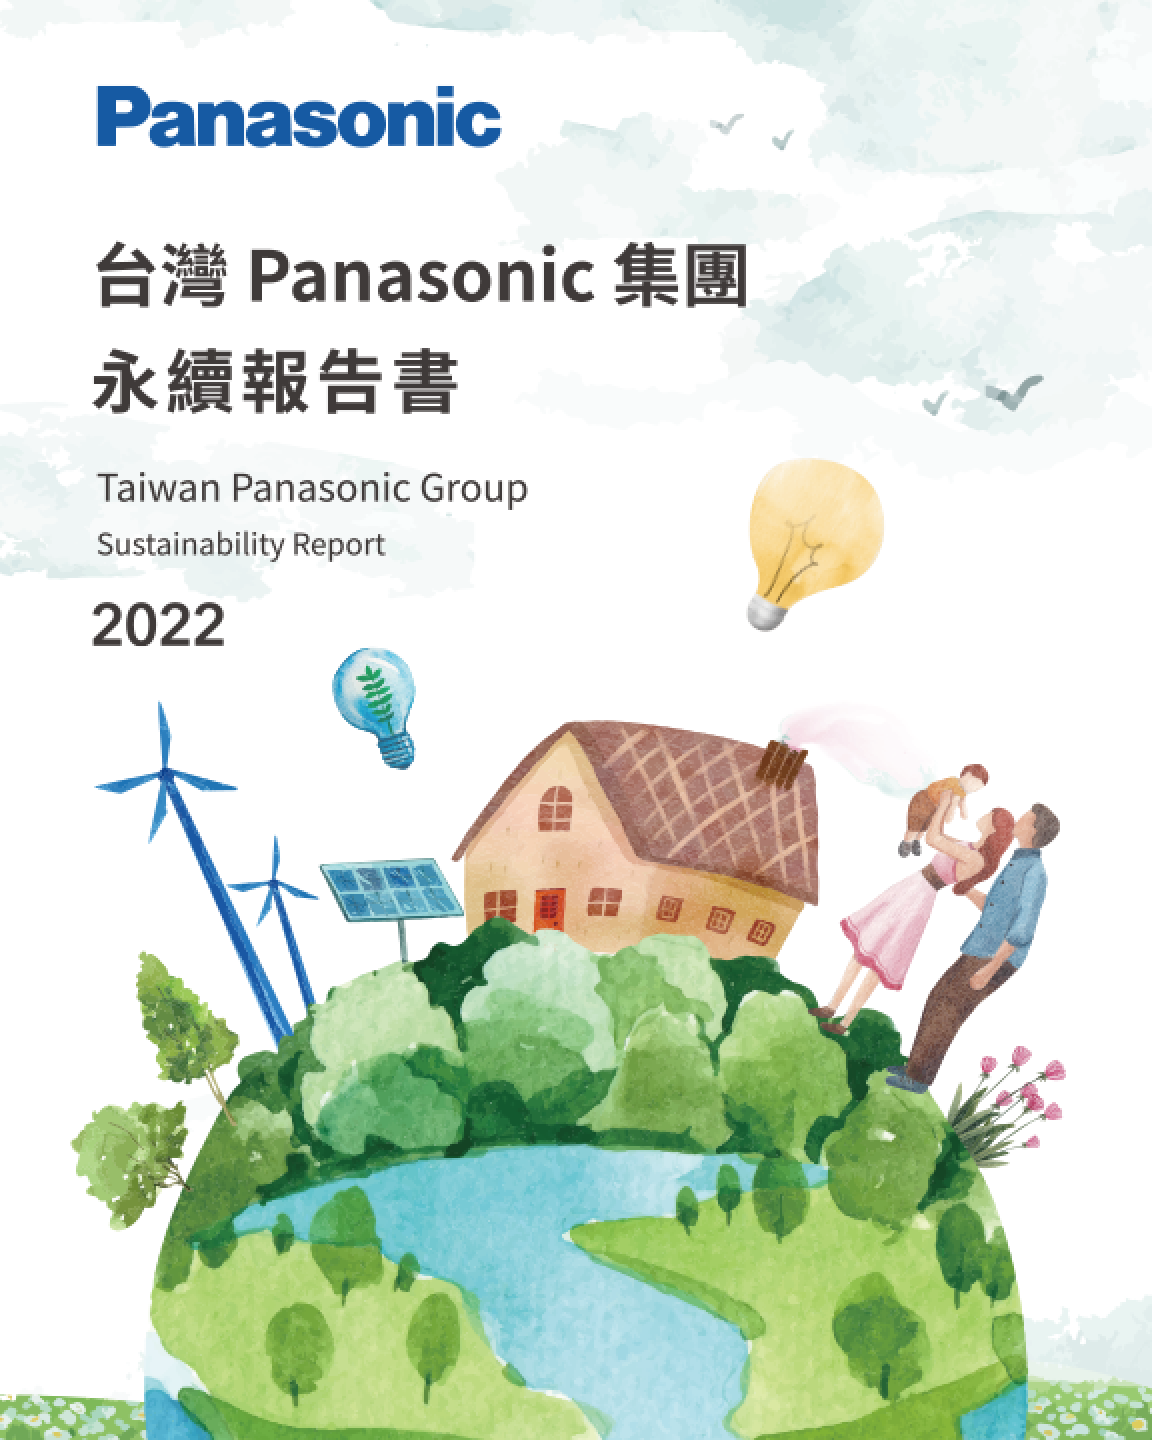 台灣 Panasonic 集團 2022 永續報告書